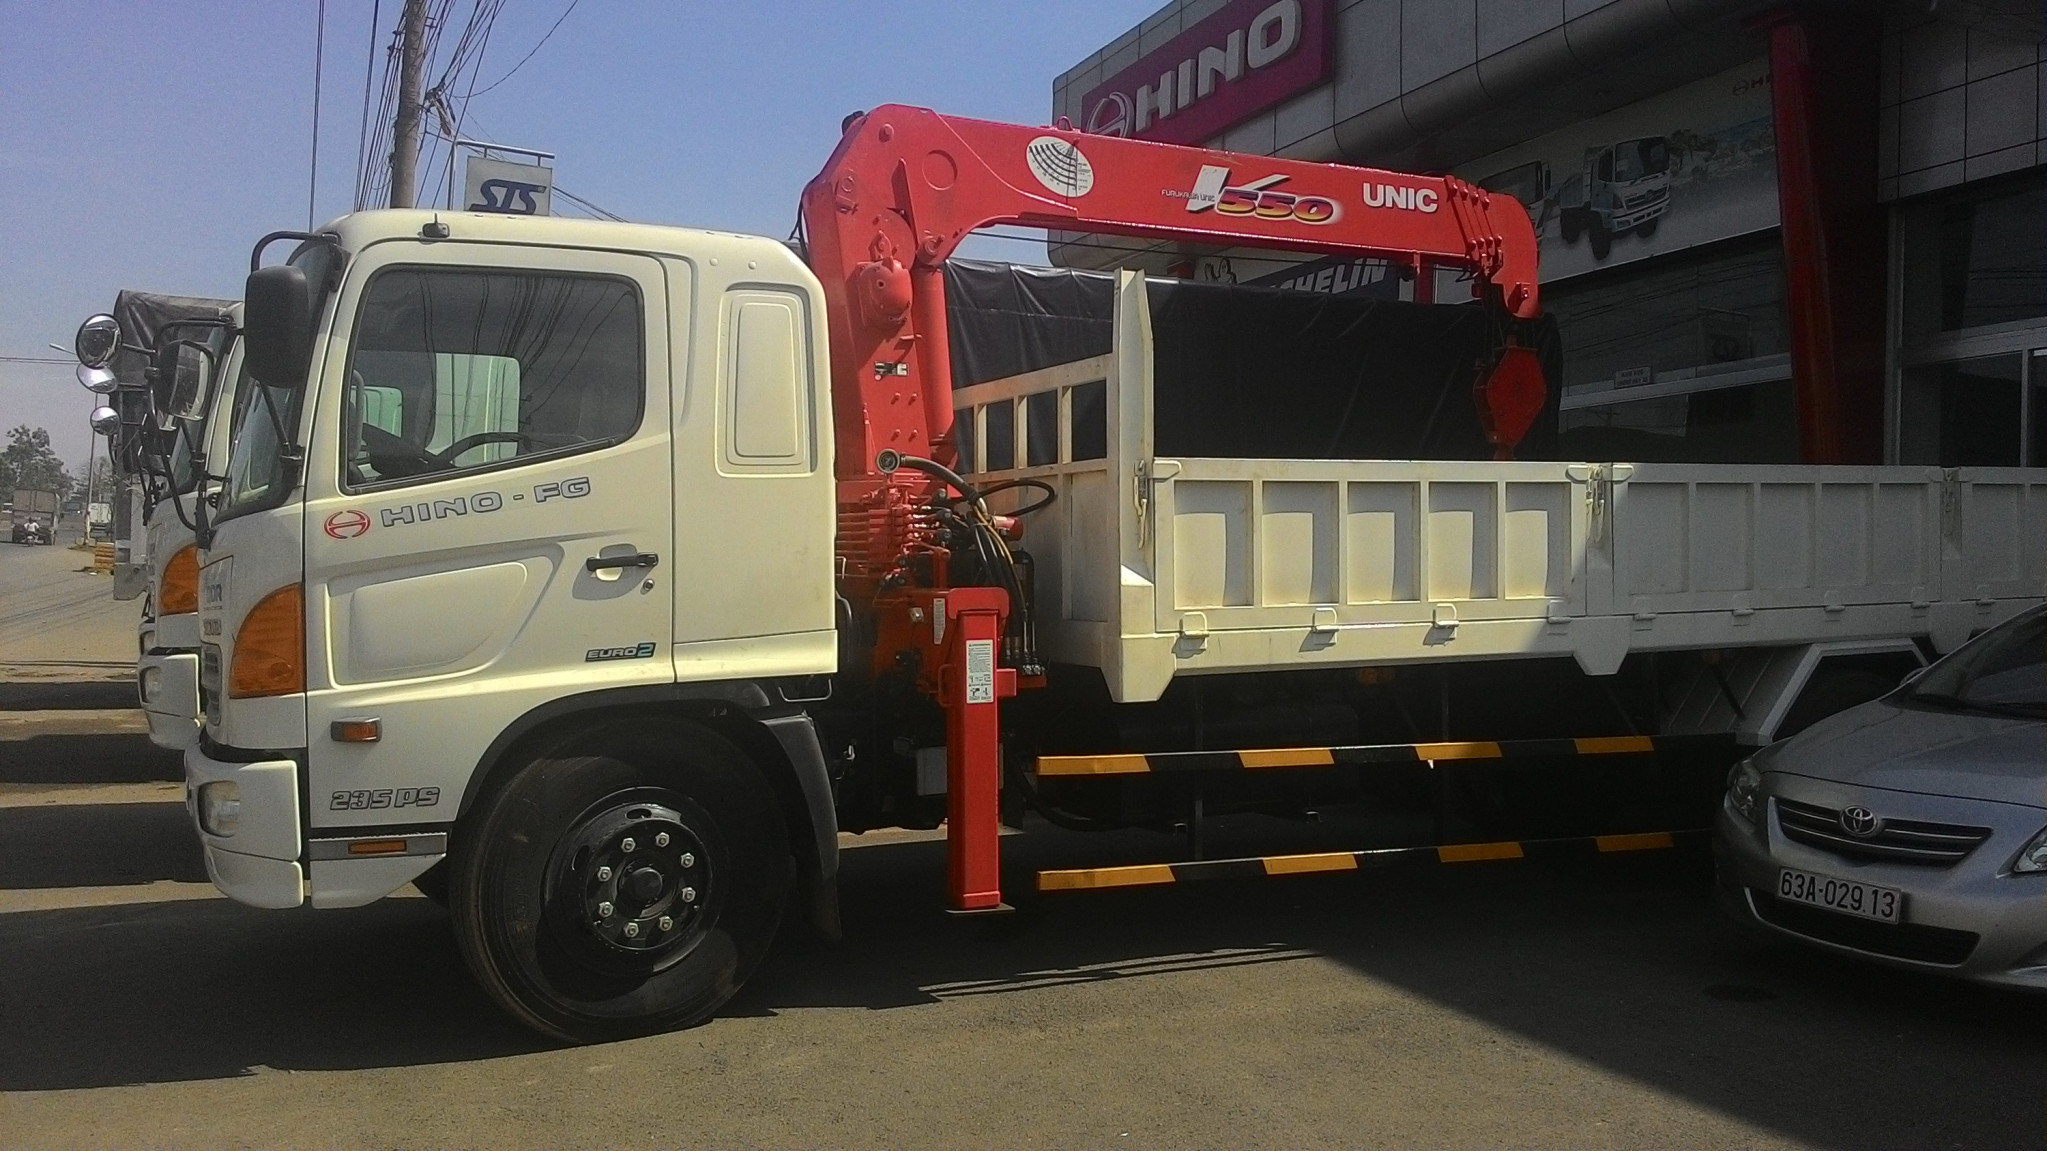 Xe tải Hino FG8 JPSL tải trọng 6.7 tấn gắn cẩu